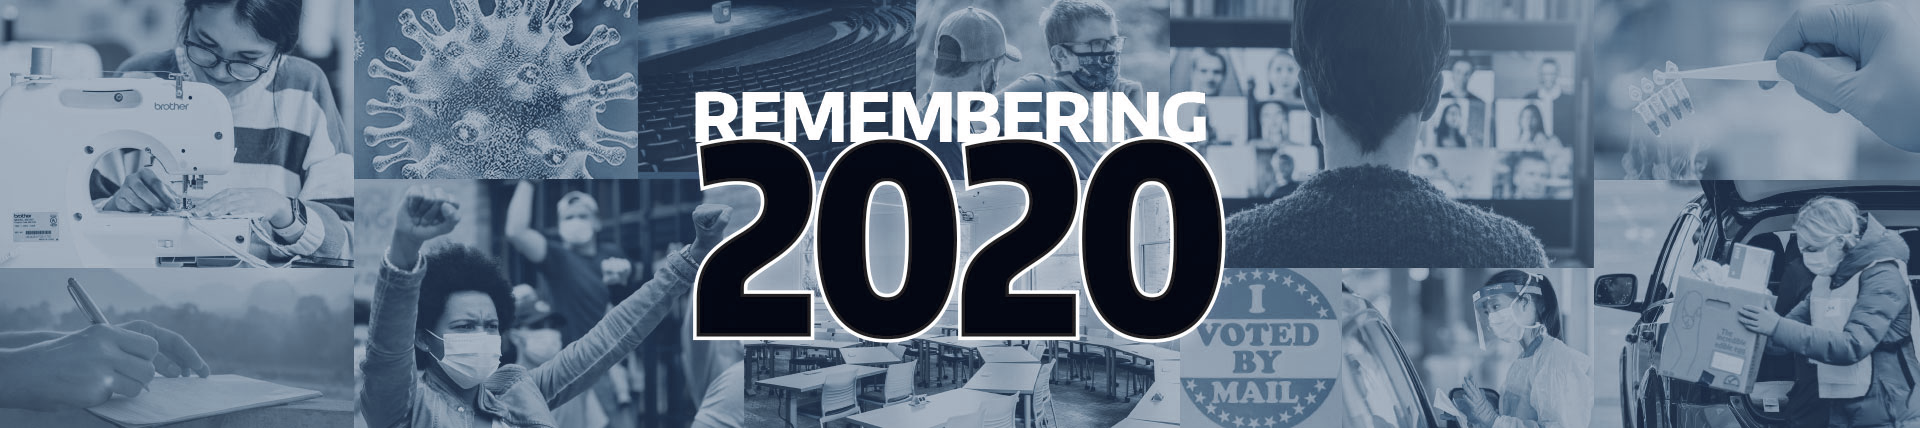 Remembering2020